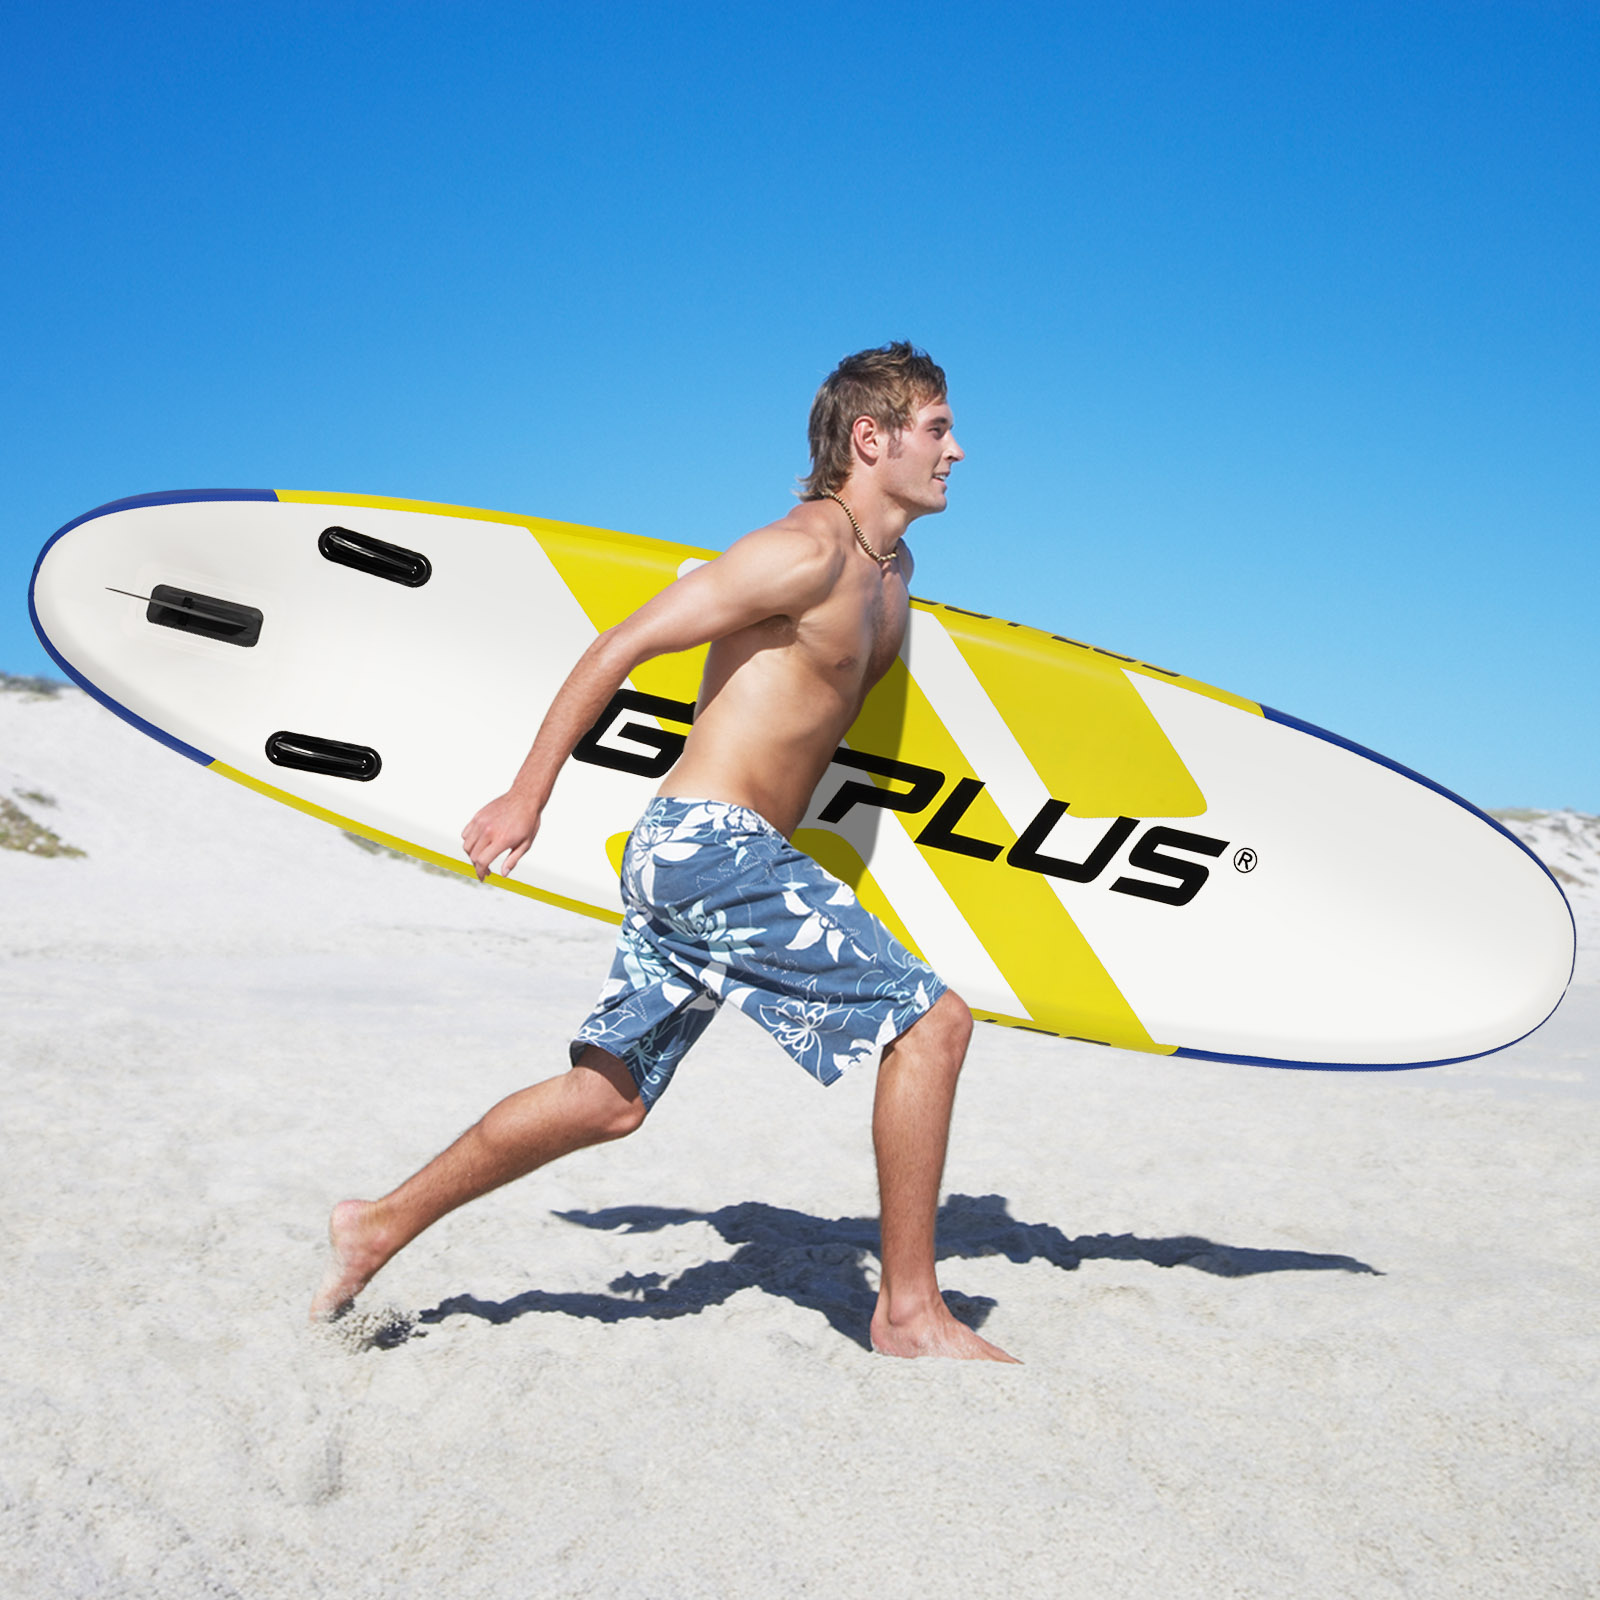 SUP Board Opblaasbaar Stand Up Paddle Board Lichtgewicht Board 335 x 76 x 15 cm Blauw + Geel + Wit